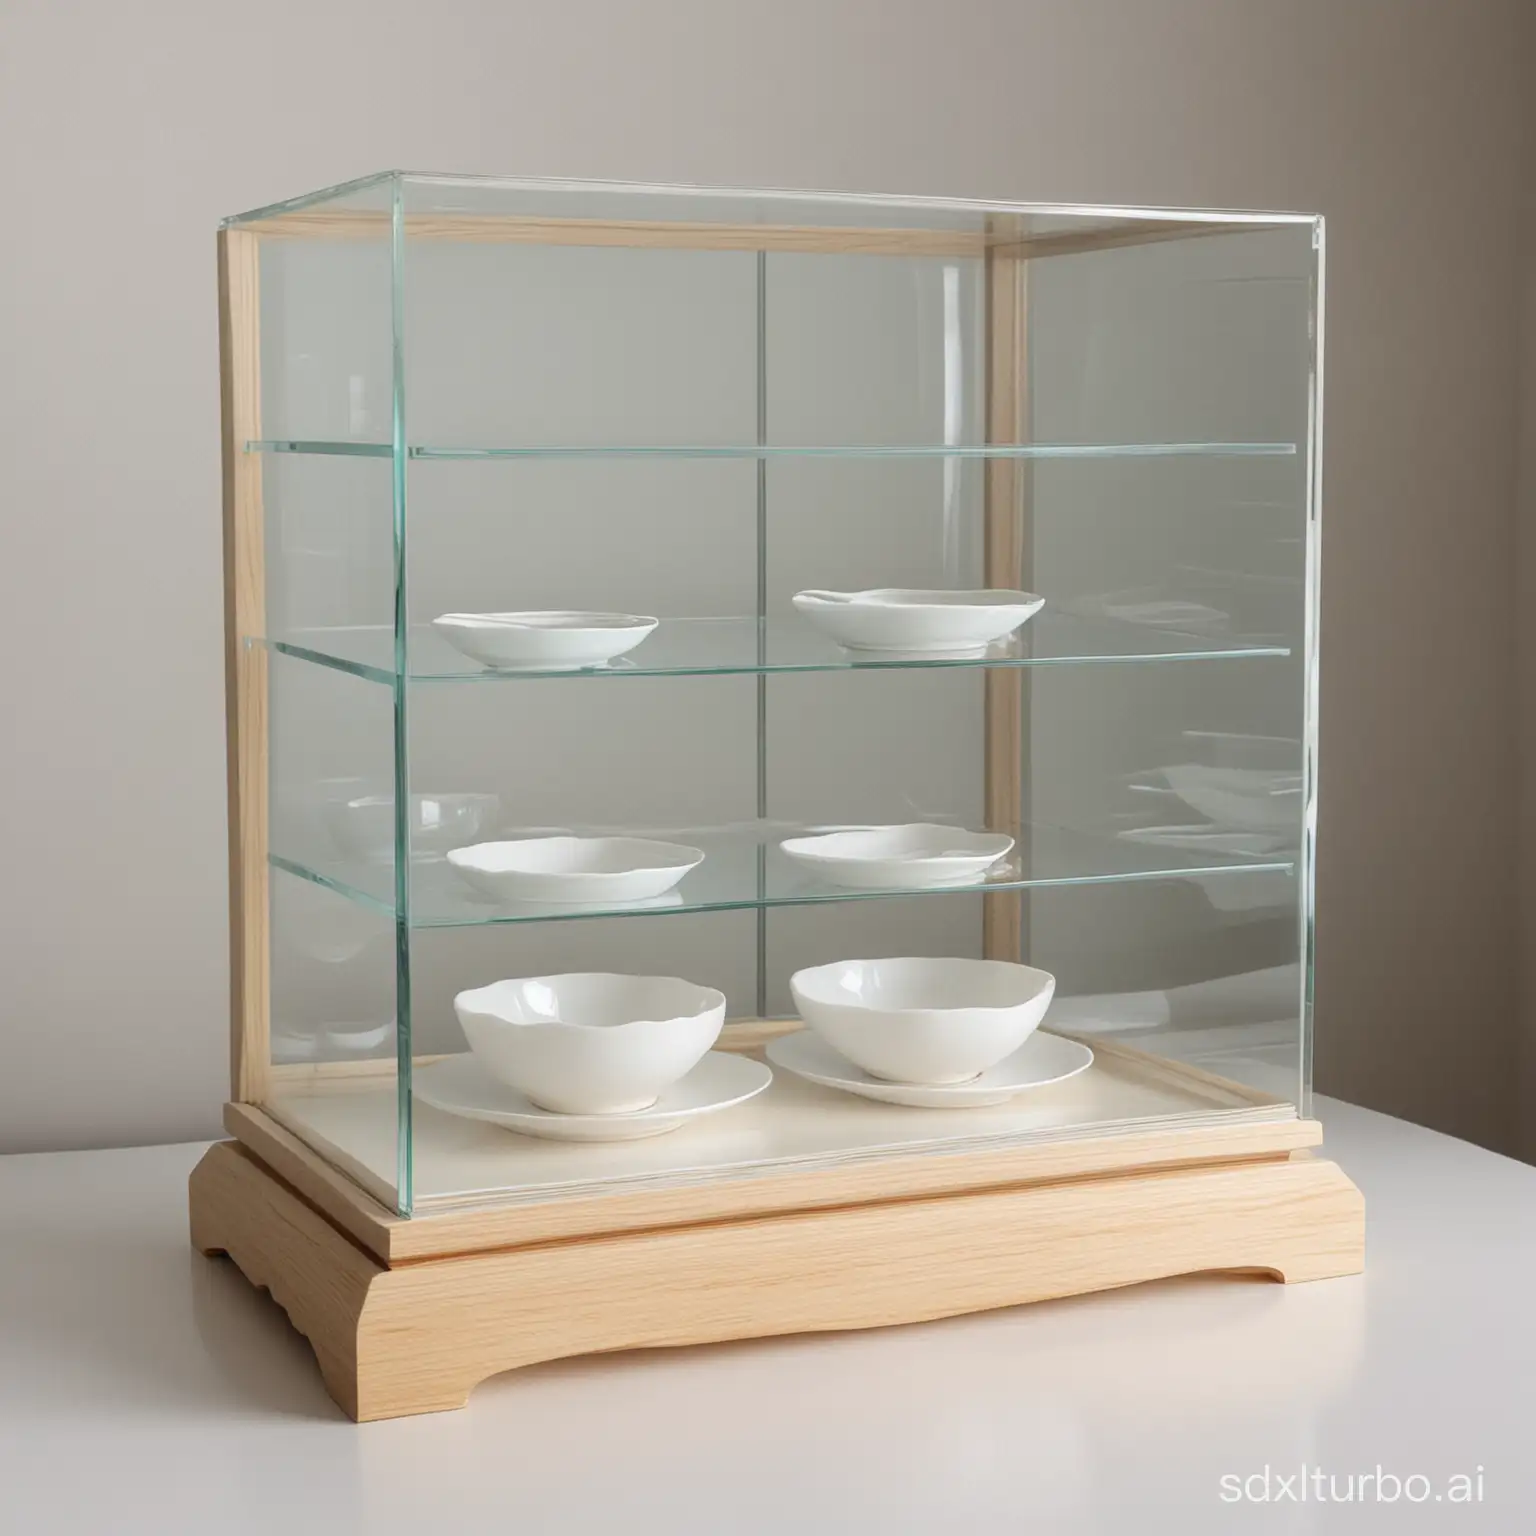 Minimalist-White-Tableware-Arrangement-in-Glass-Display-Case